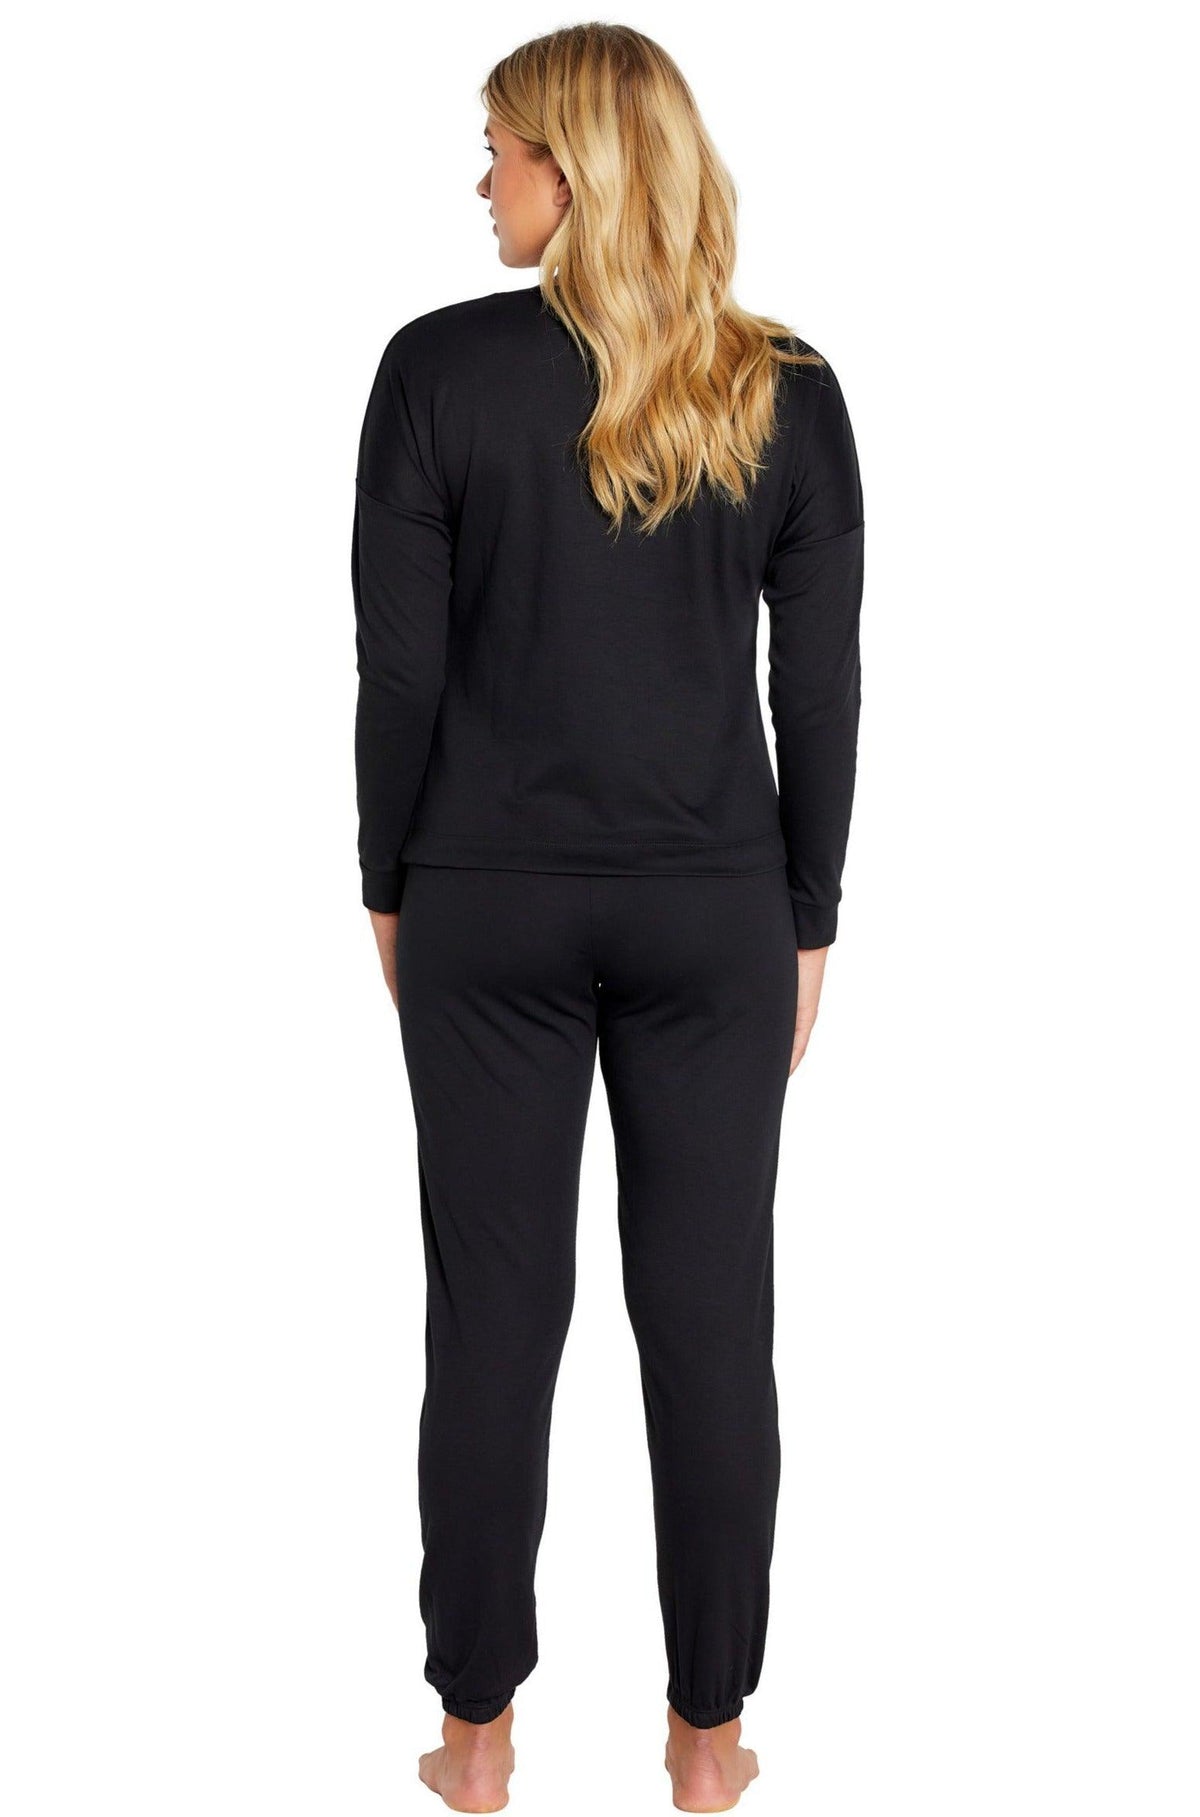 Kathy Long Sleeve PJ Set - Sales Rack - Marelle Sleepwear